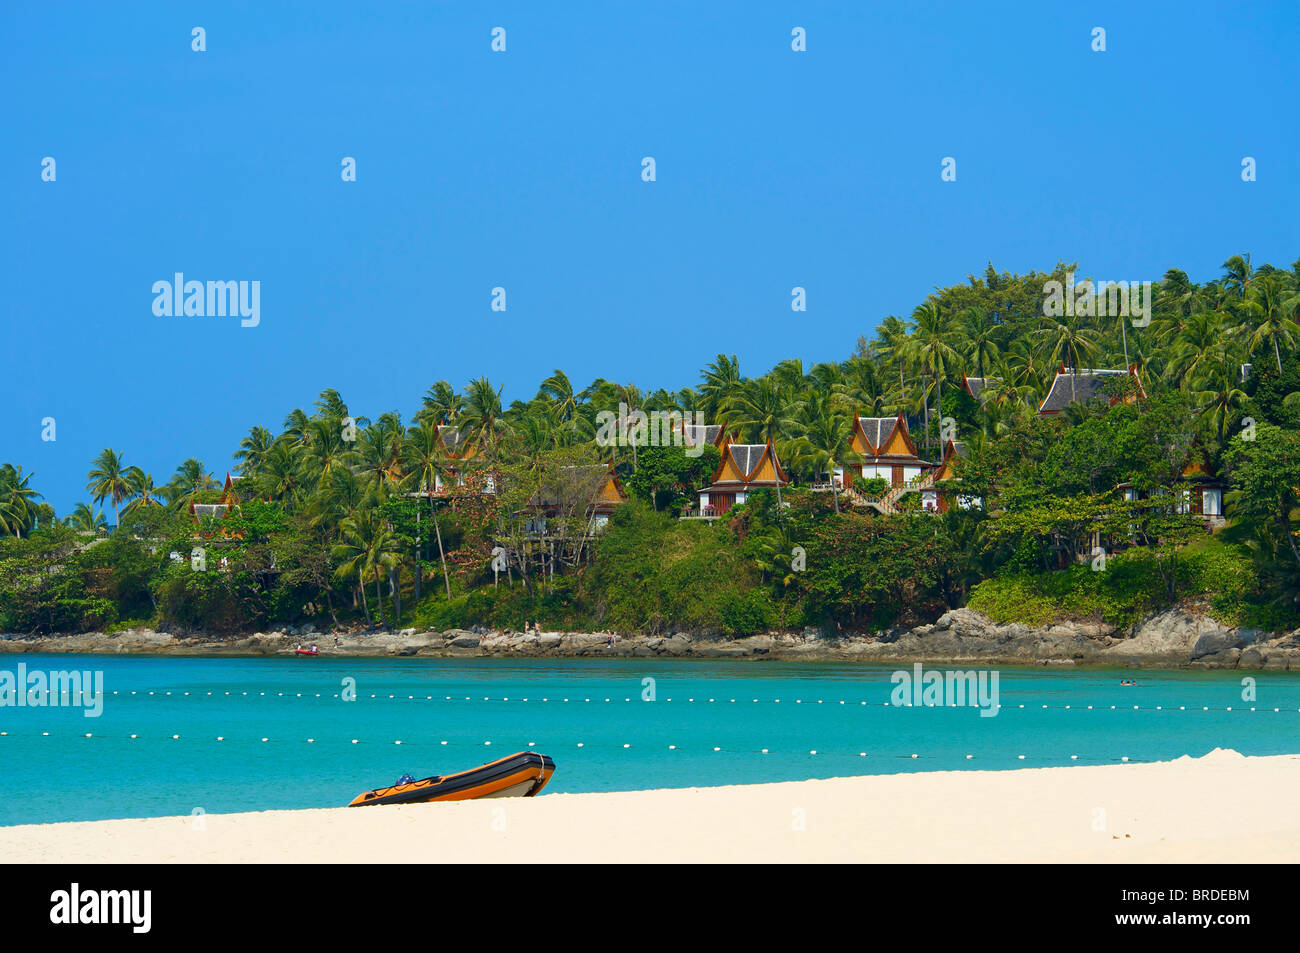 Pansea Beach, île de Phuket, Thaïlande Banque D'Images